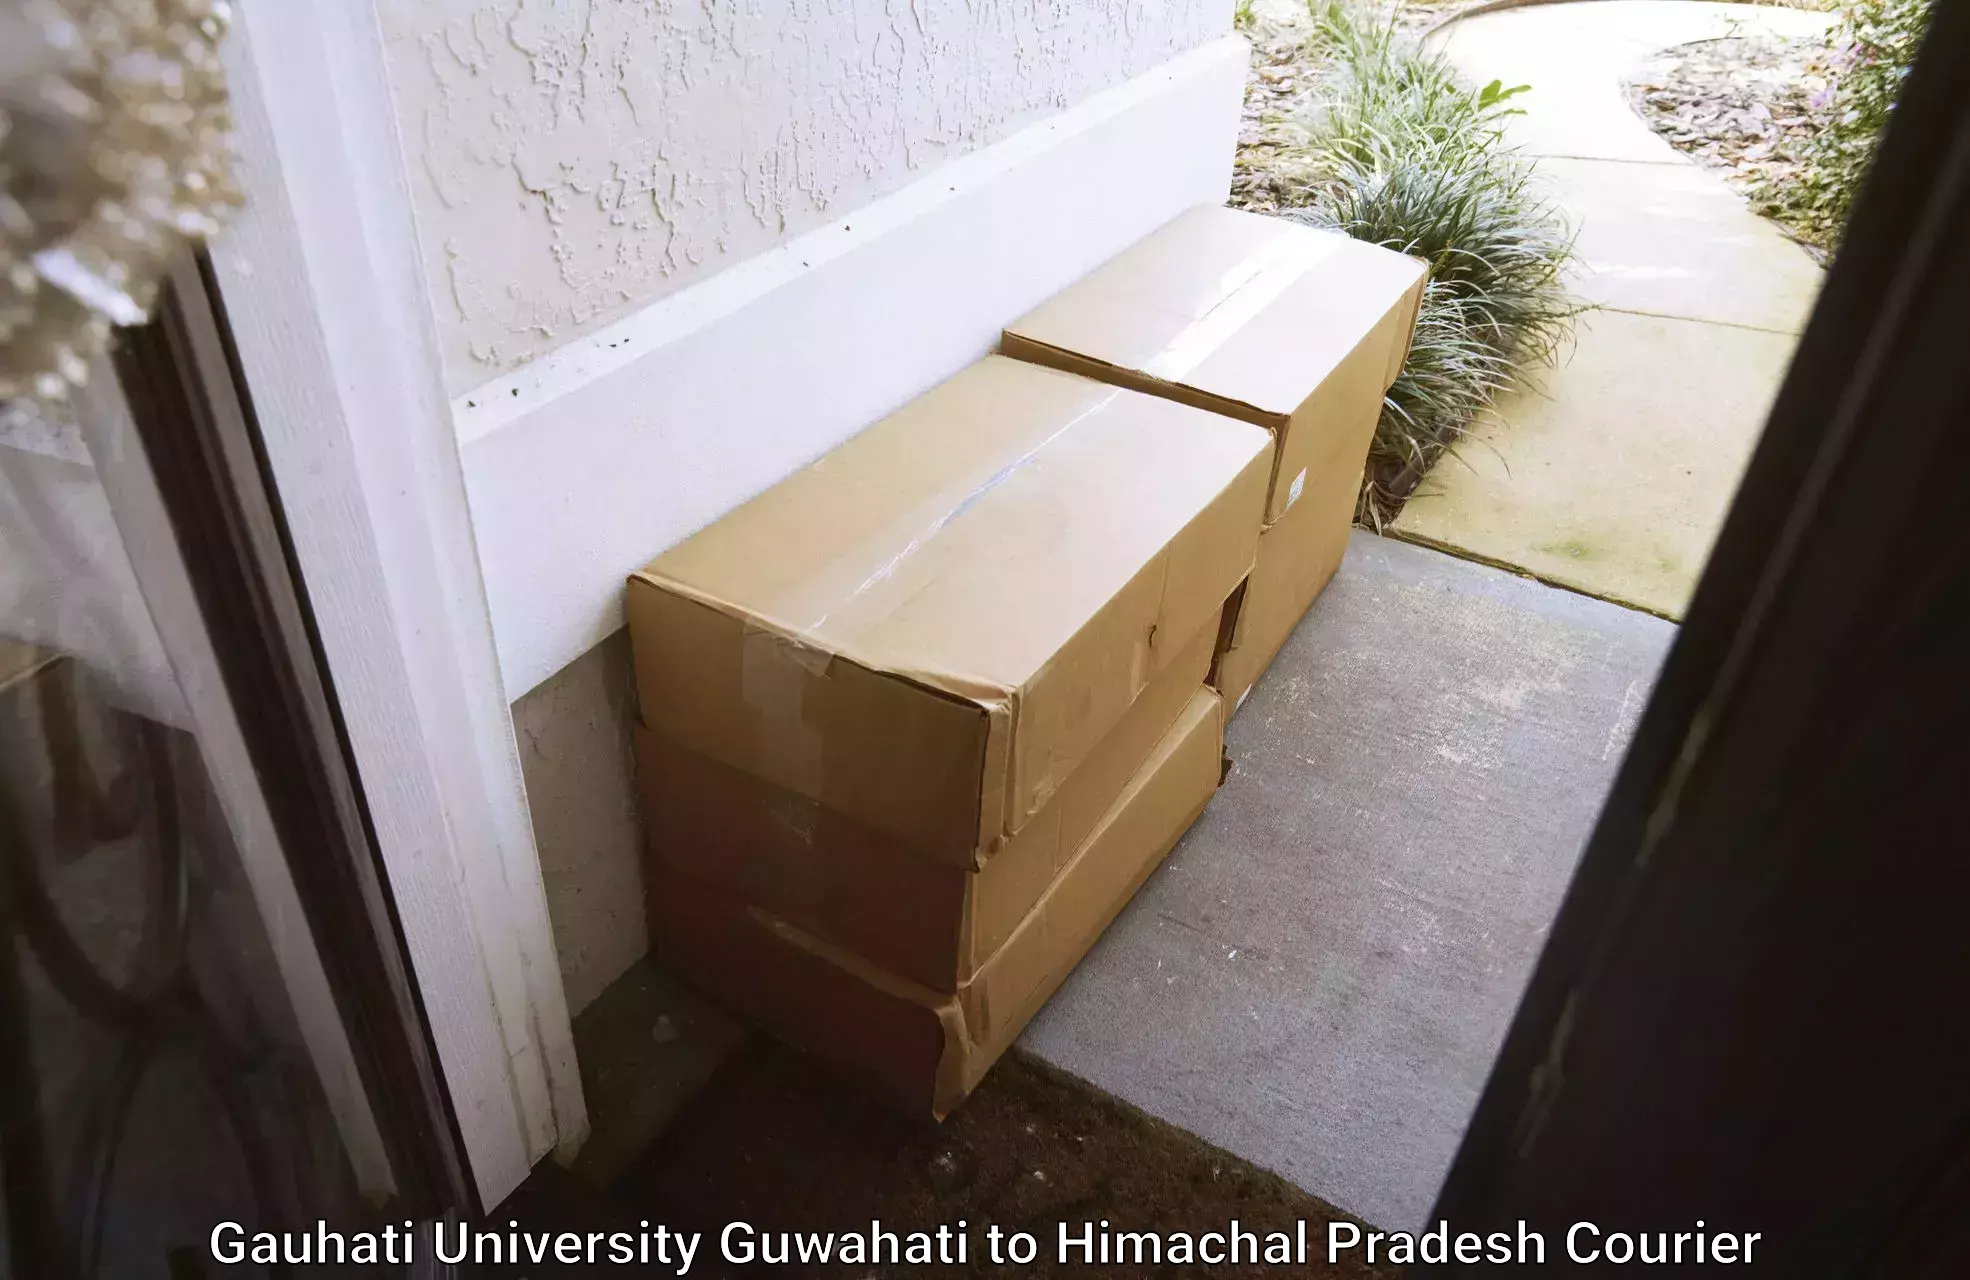 Modern delivery methods Gauhati University Guwahati to Saki Charang